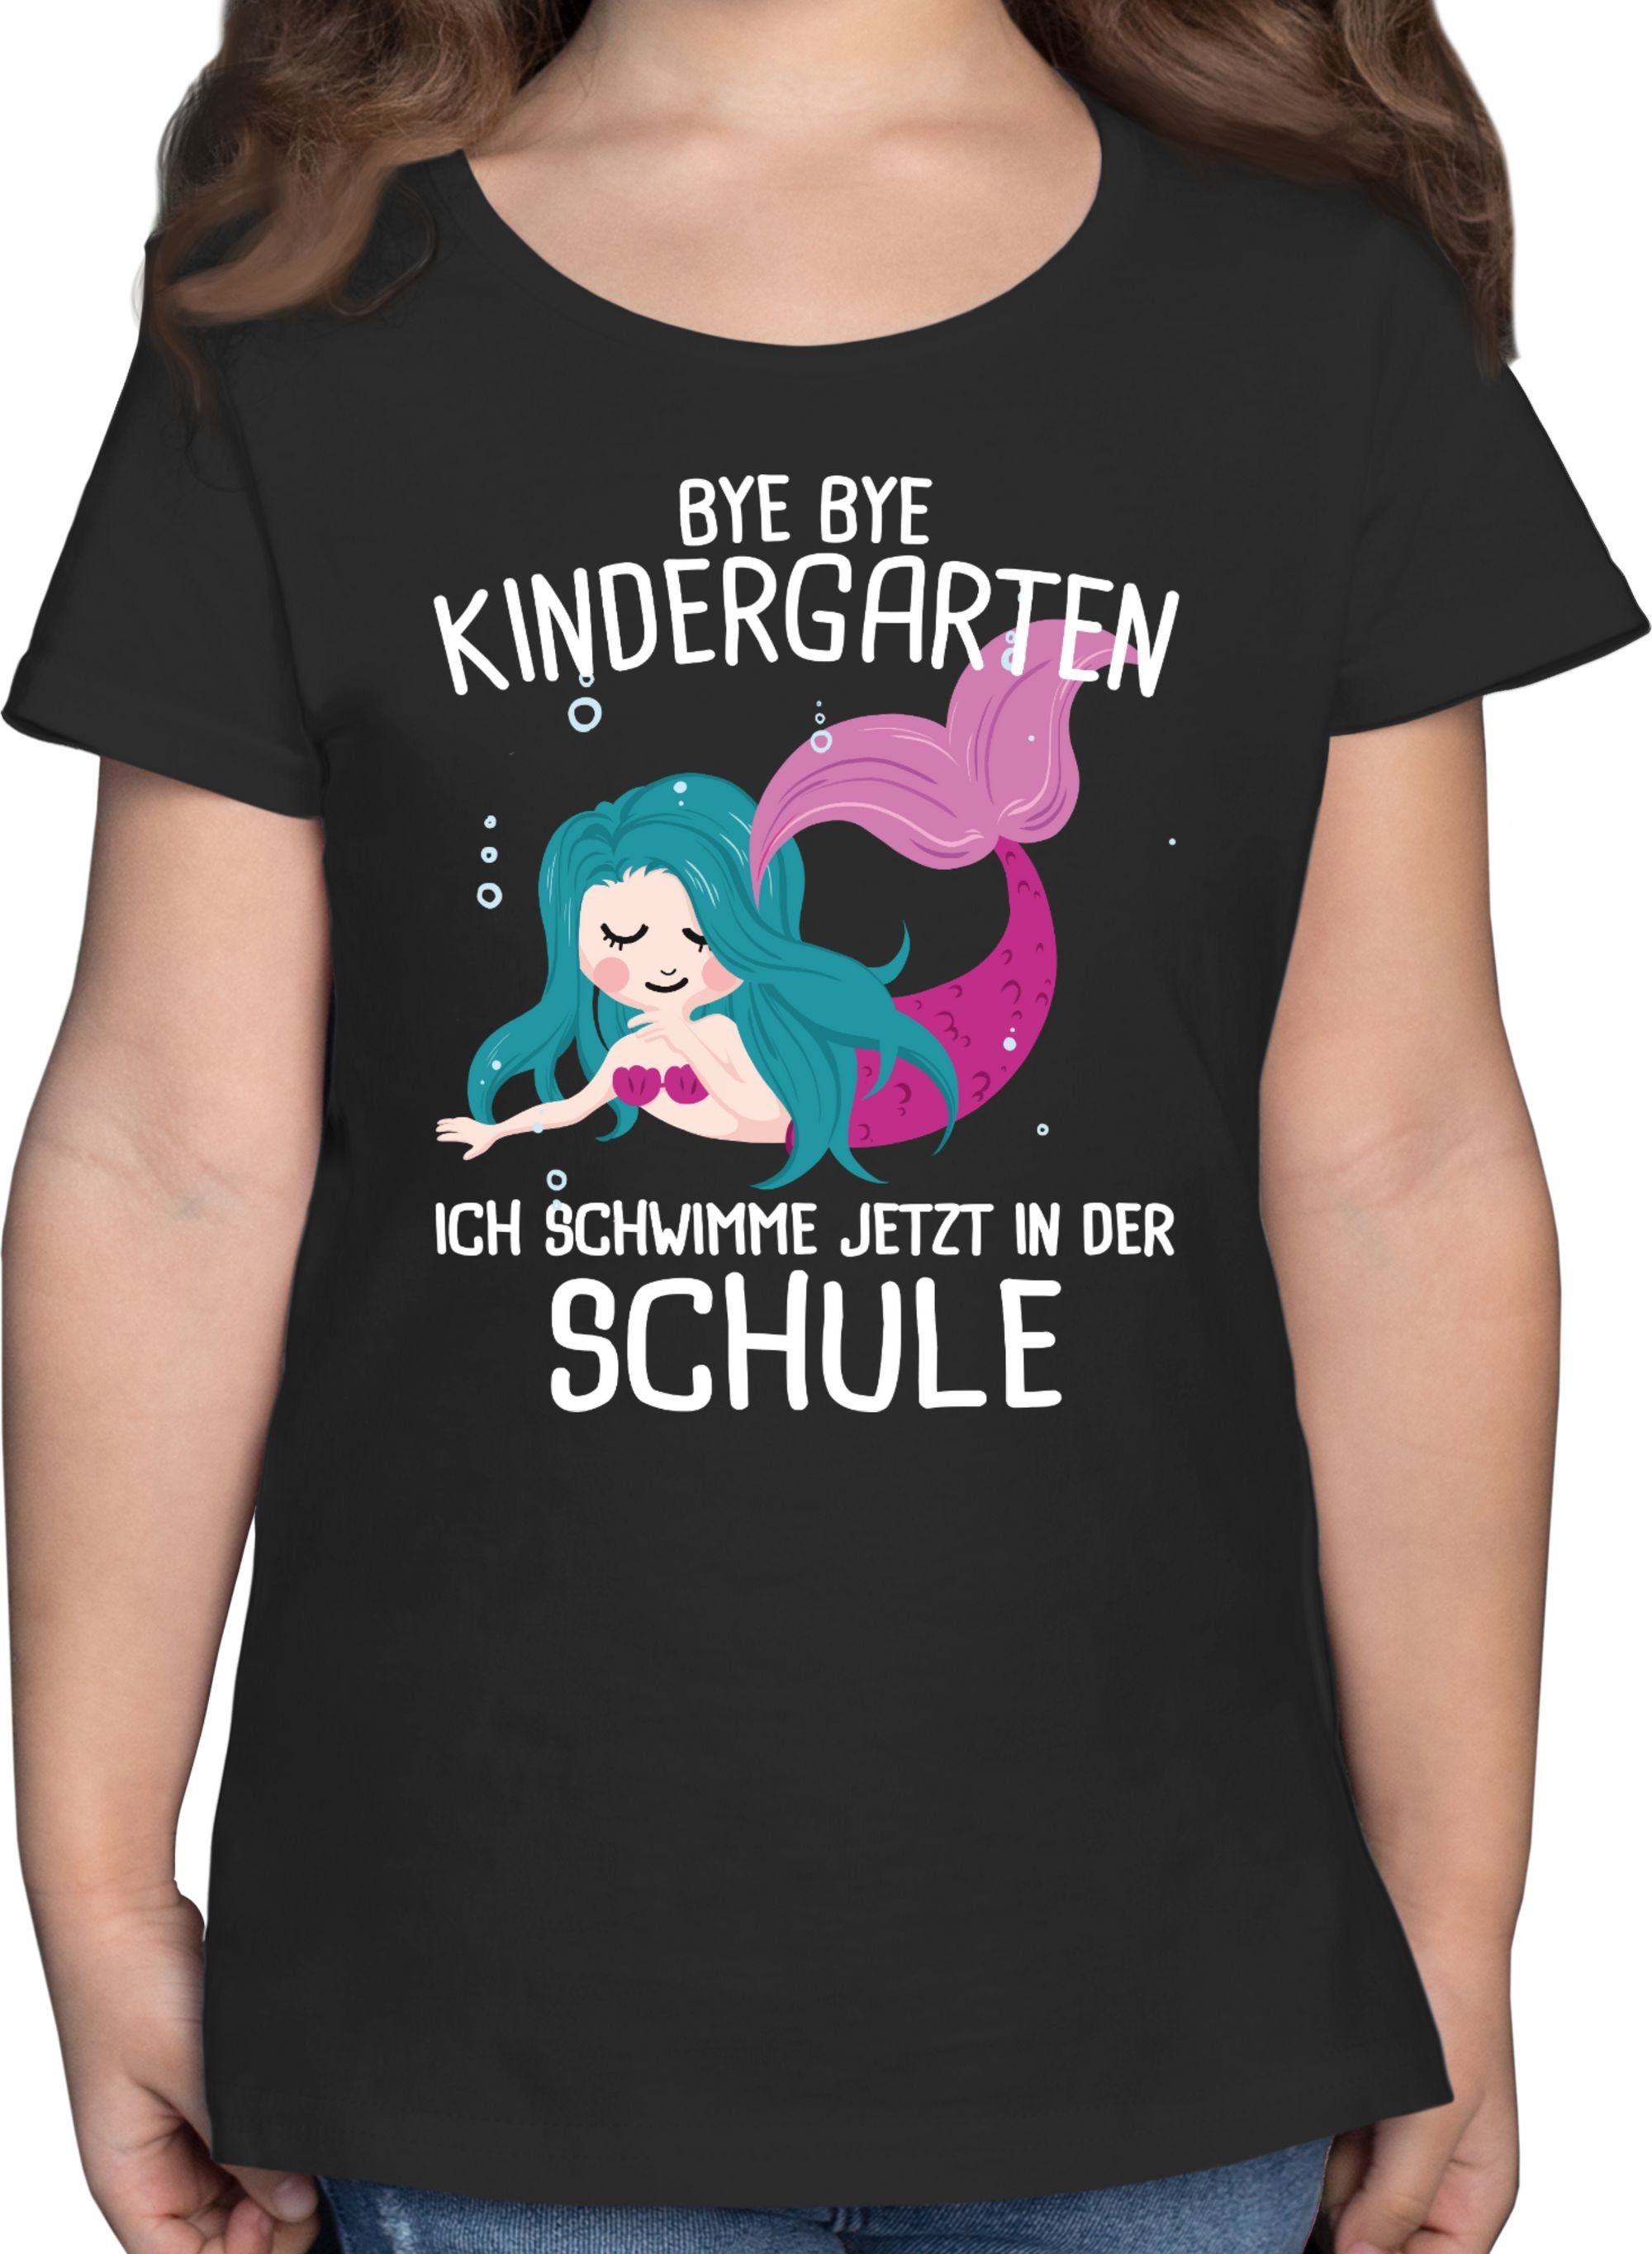 Shirtracer T-Shirt Bye Bye jetzt der Schwarz schwimme ich Mädchen Schule 3 Einschulung in Kindergarten